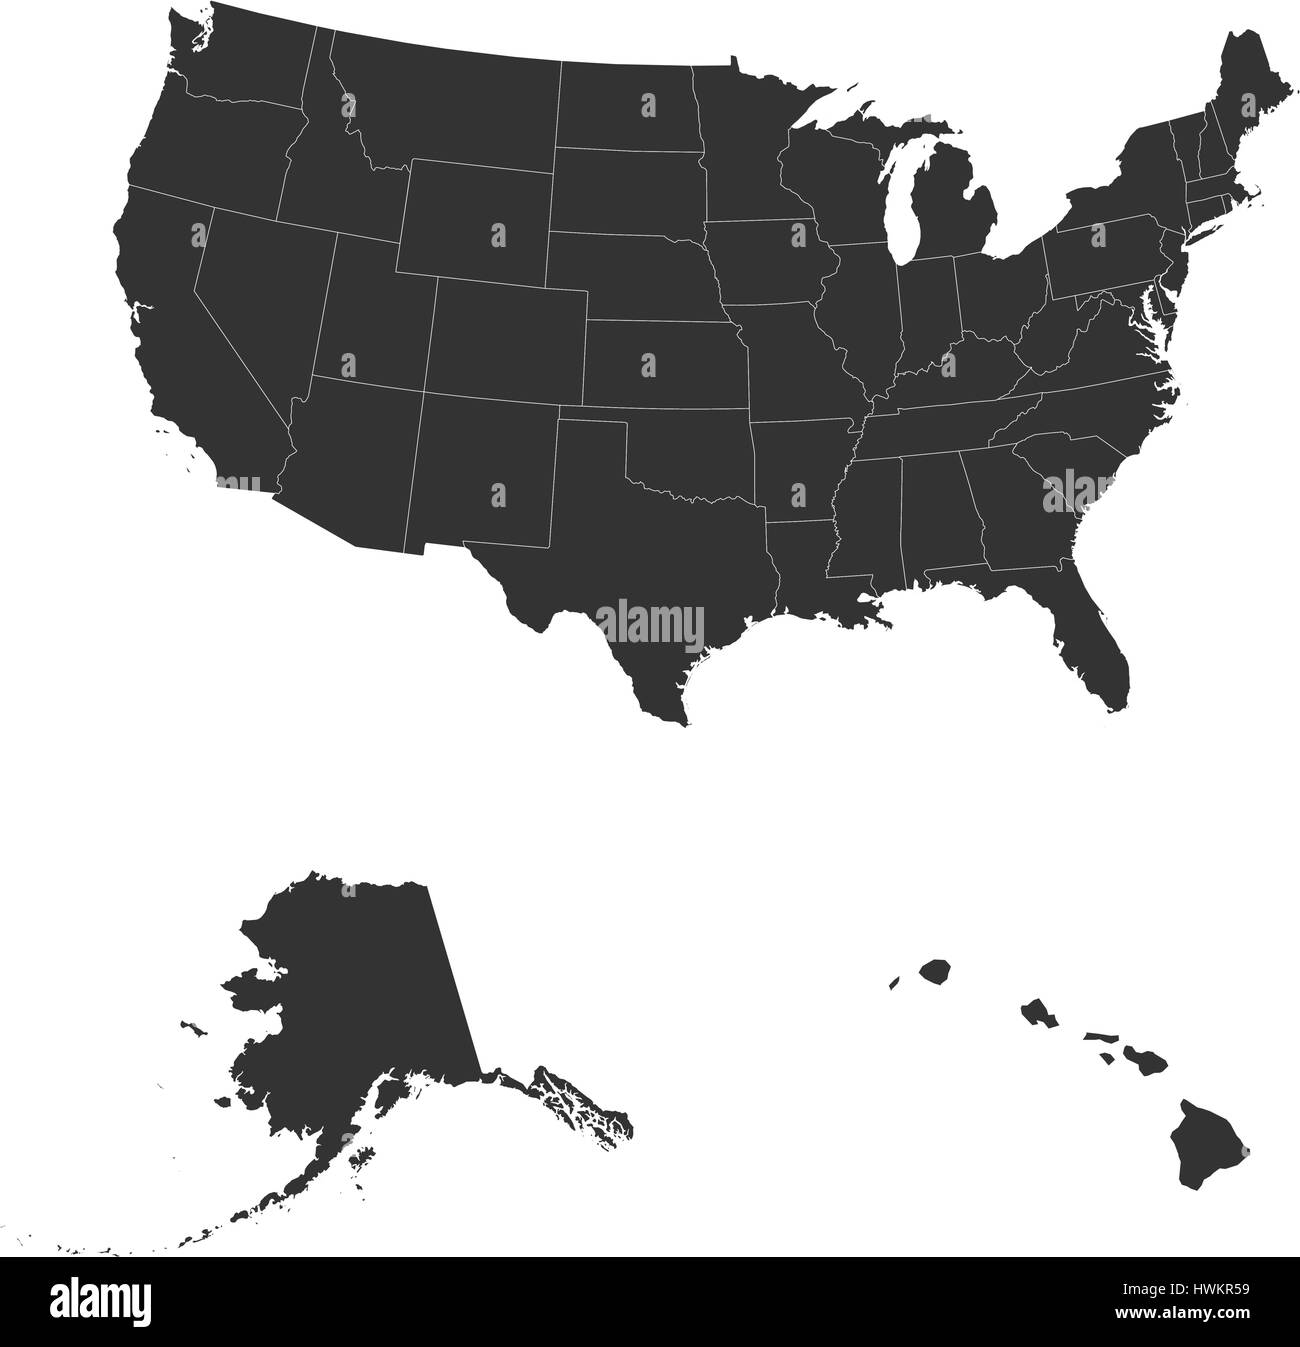 La mappa dettagliata degli Stati Uniti tra cui Alaska e Hawaii. Gli Stati Uniti d'America Illustrazione Vettoriale